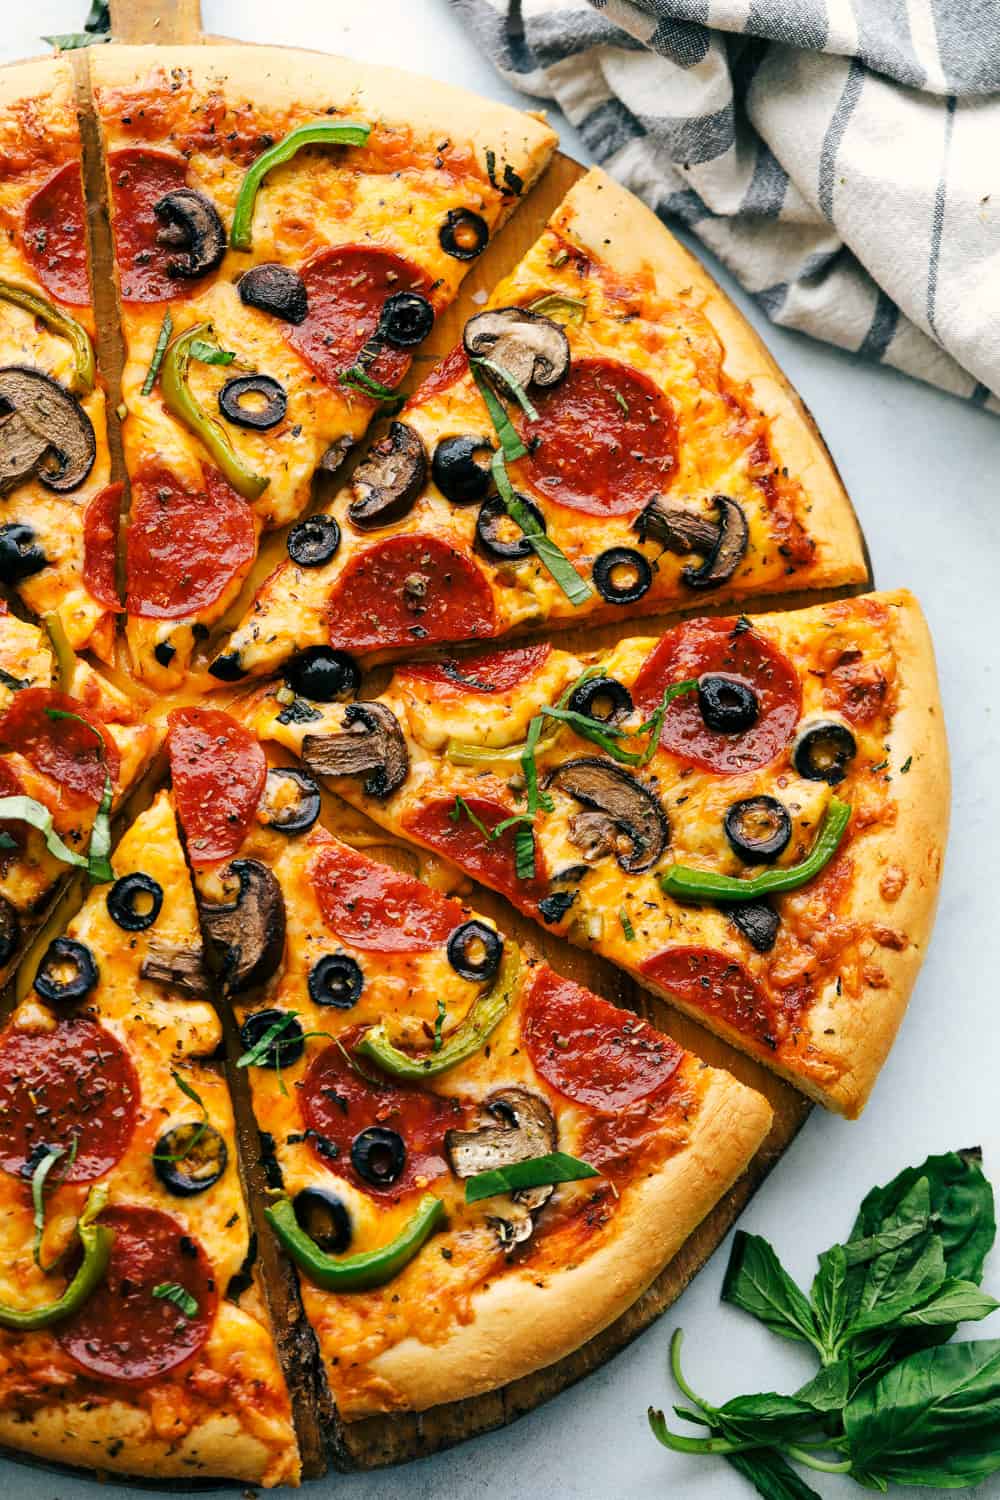 طريقة بسيطة لعمل عجينة البيتزا مثل المطاعم والمحلات الإيطالية